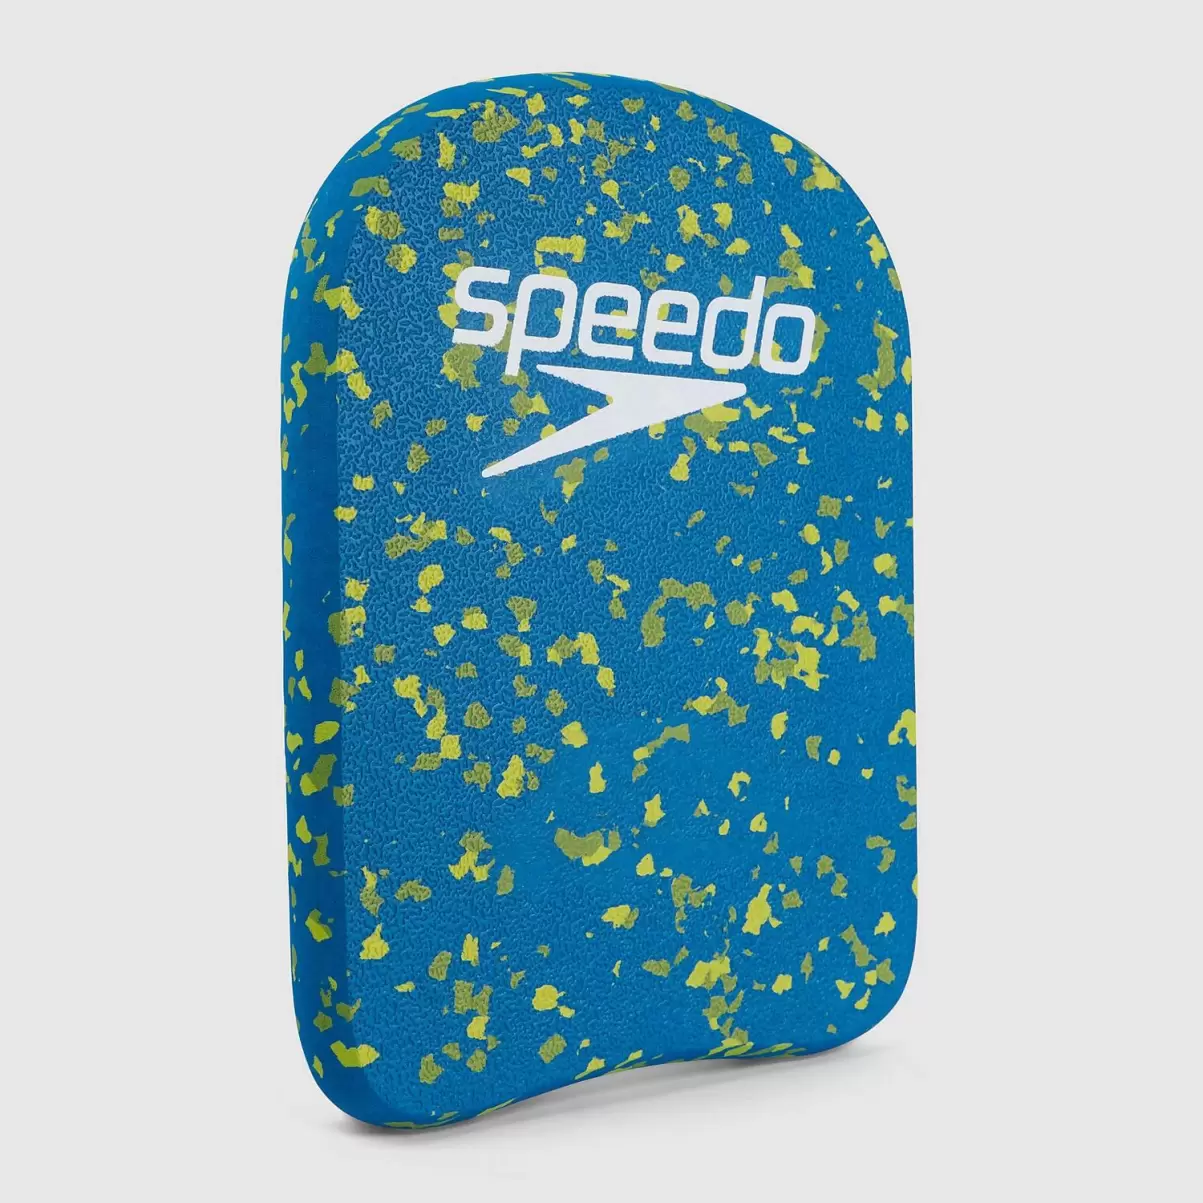 Speedo Damen Bloom Kickboard Blau/Grün Schwimm Accessoires - 2